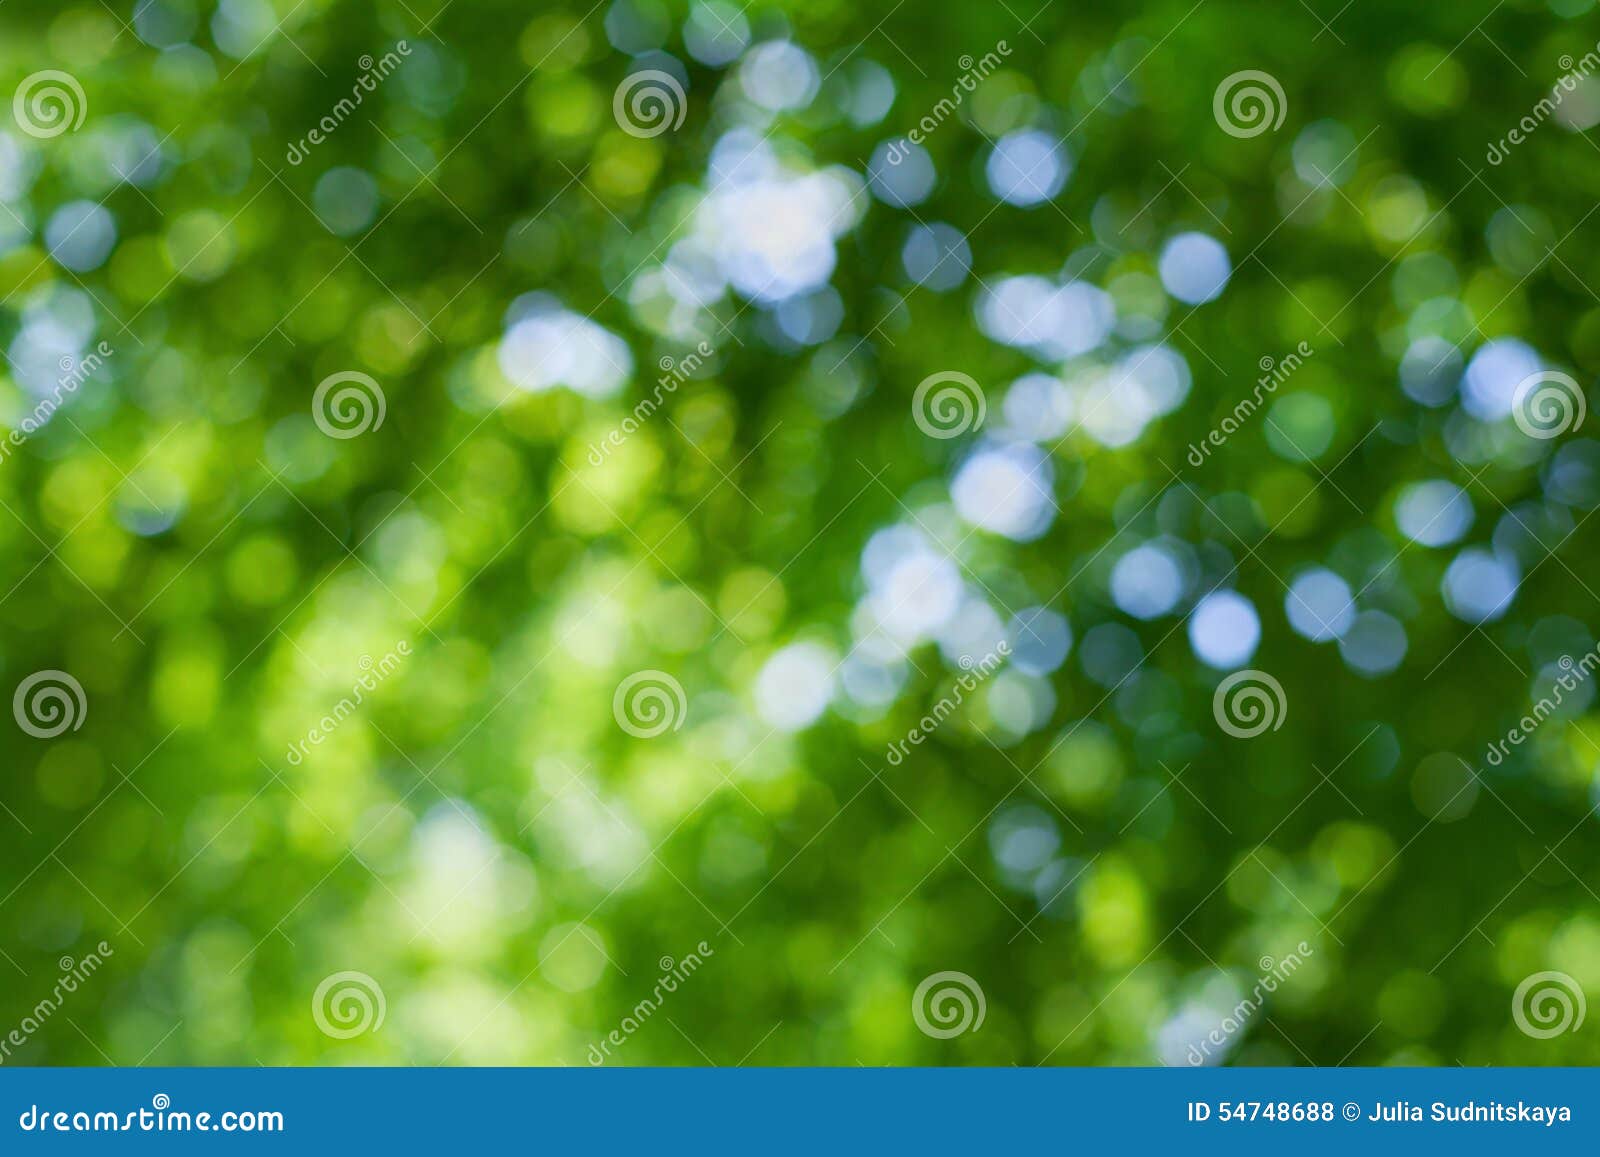 Cùng trải nghiệm hơi thở của thiên nhiên như lần lượt chạy qua các hạt bokeh màu xanh lá cây trong hình ảnh này. Bạn sẽ cảm thấy bình an và sáng tạo hơn bao giờ hết!